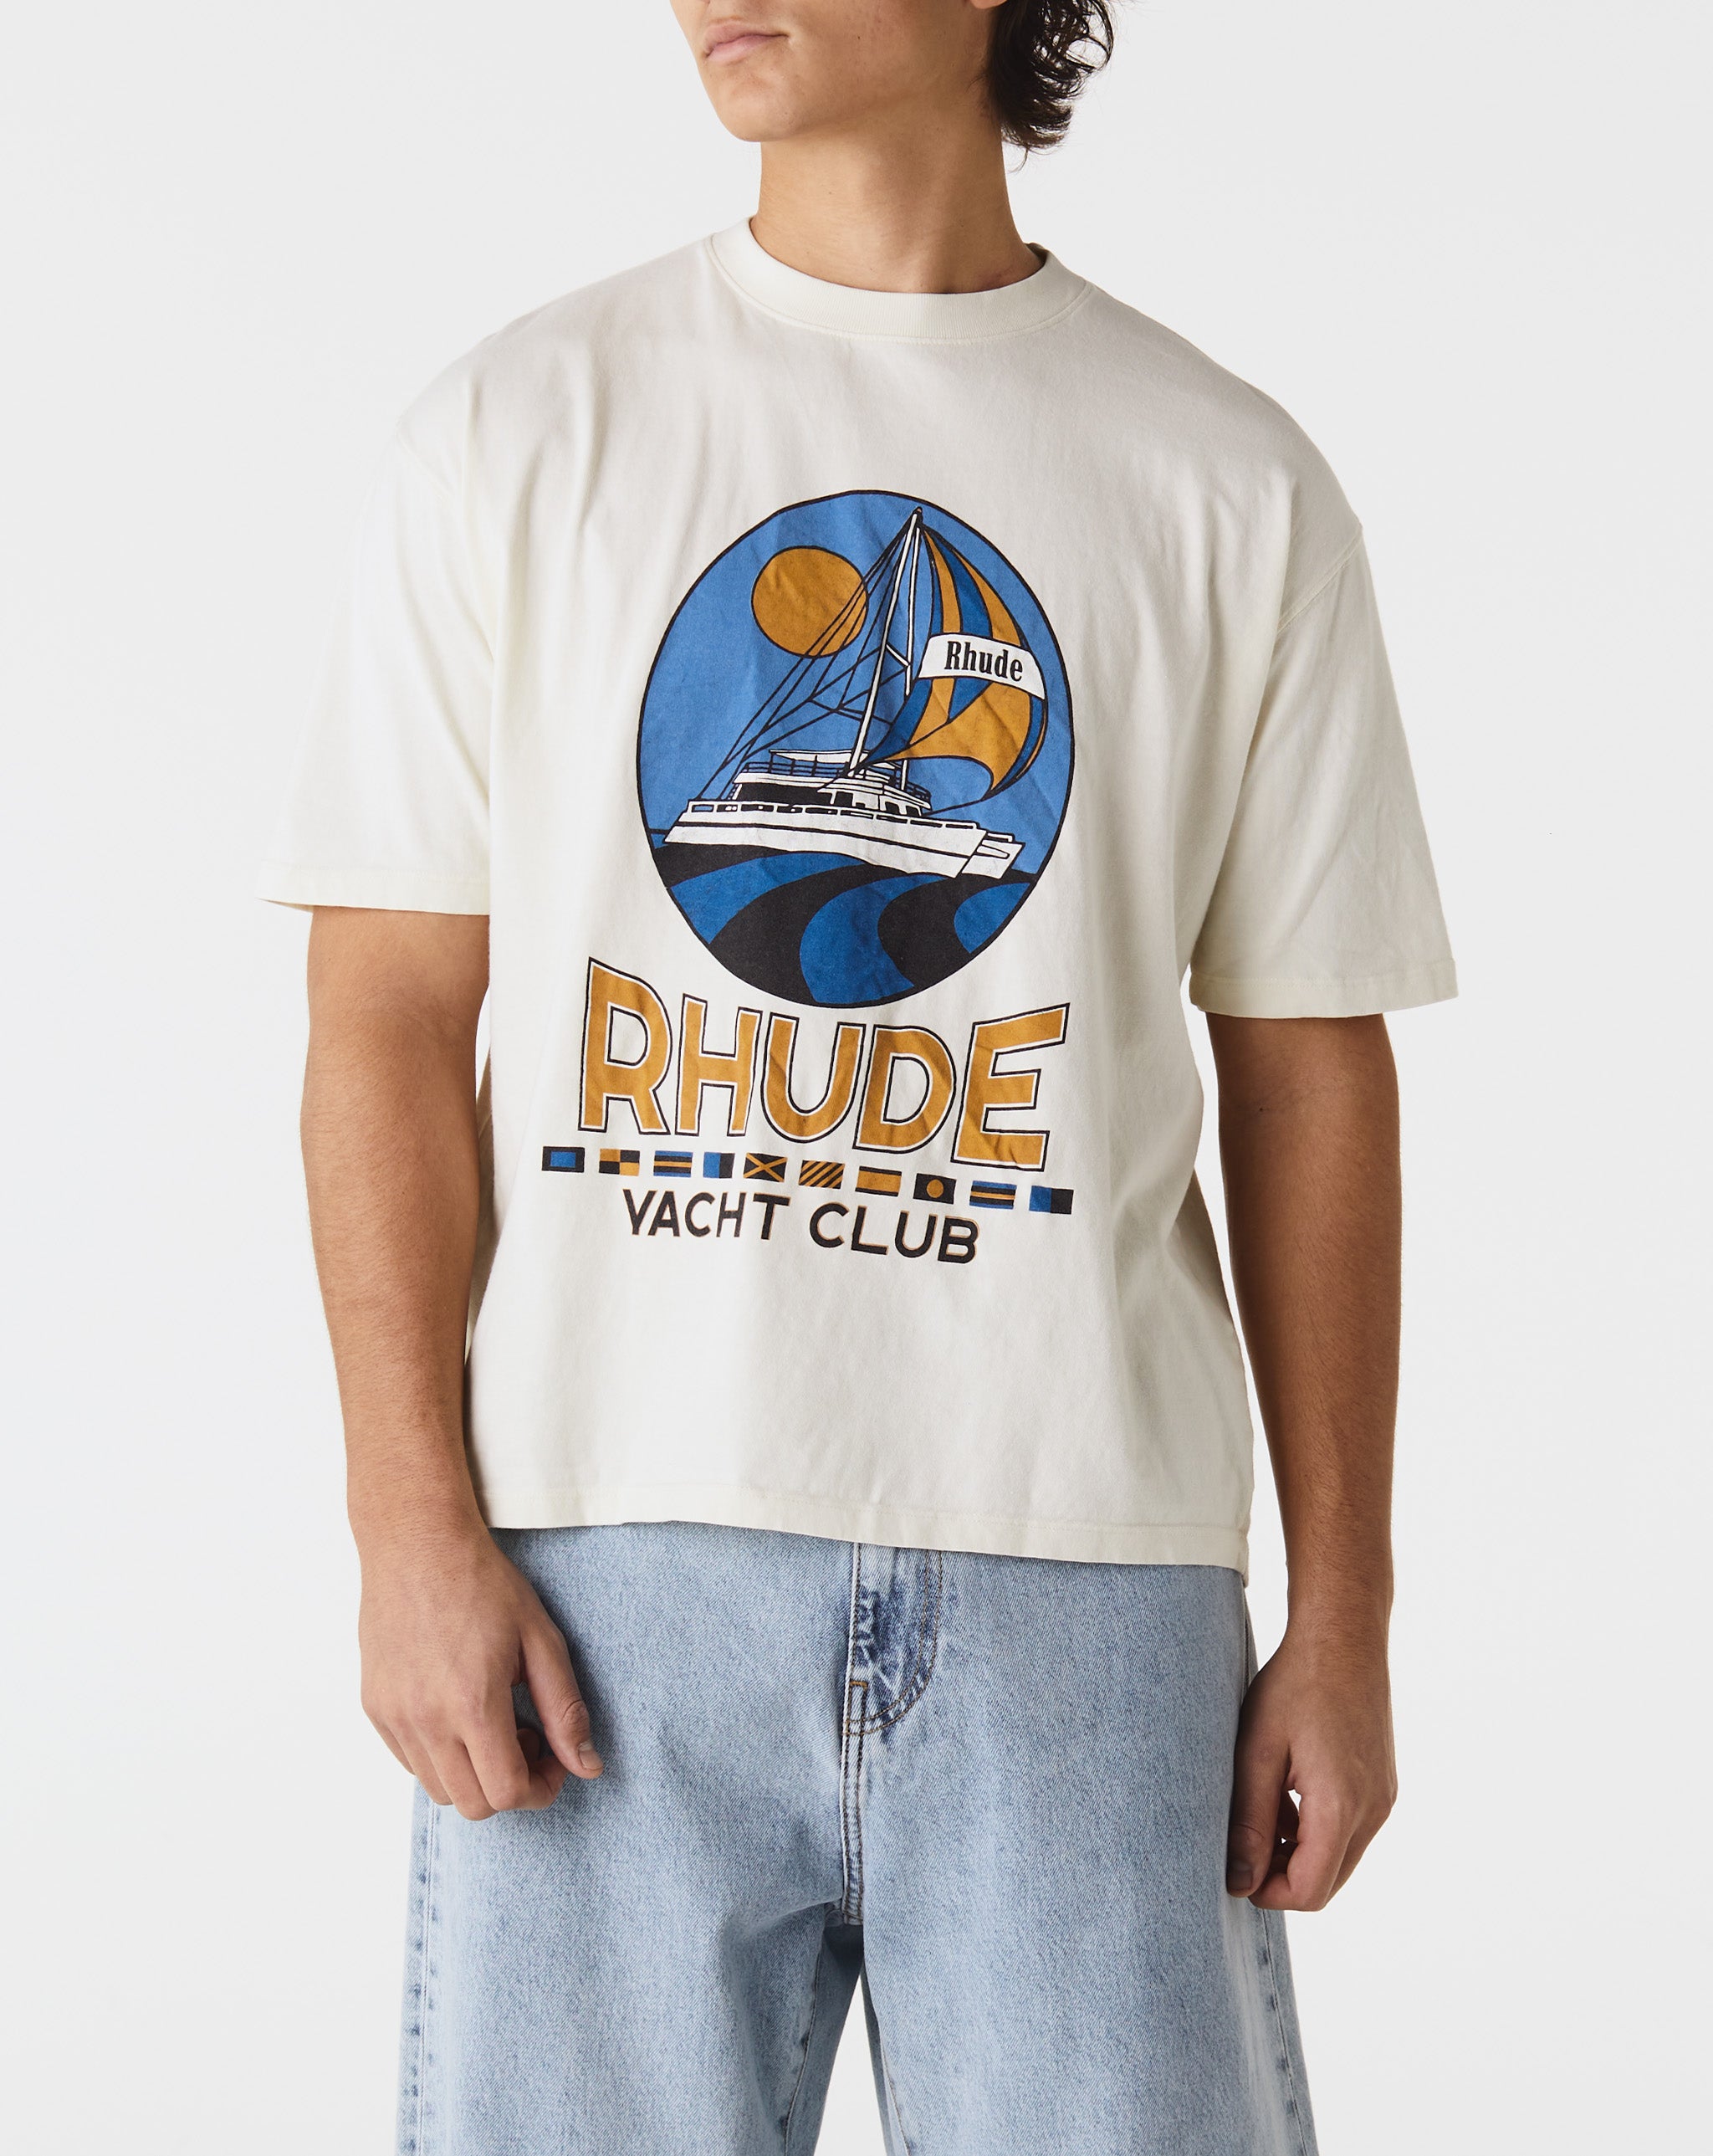 Rhude Yacht Club T-Shirt  - Cheap Urlfreeze Jordan outlet